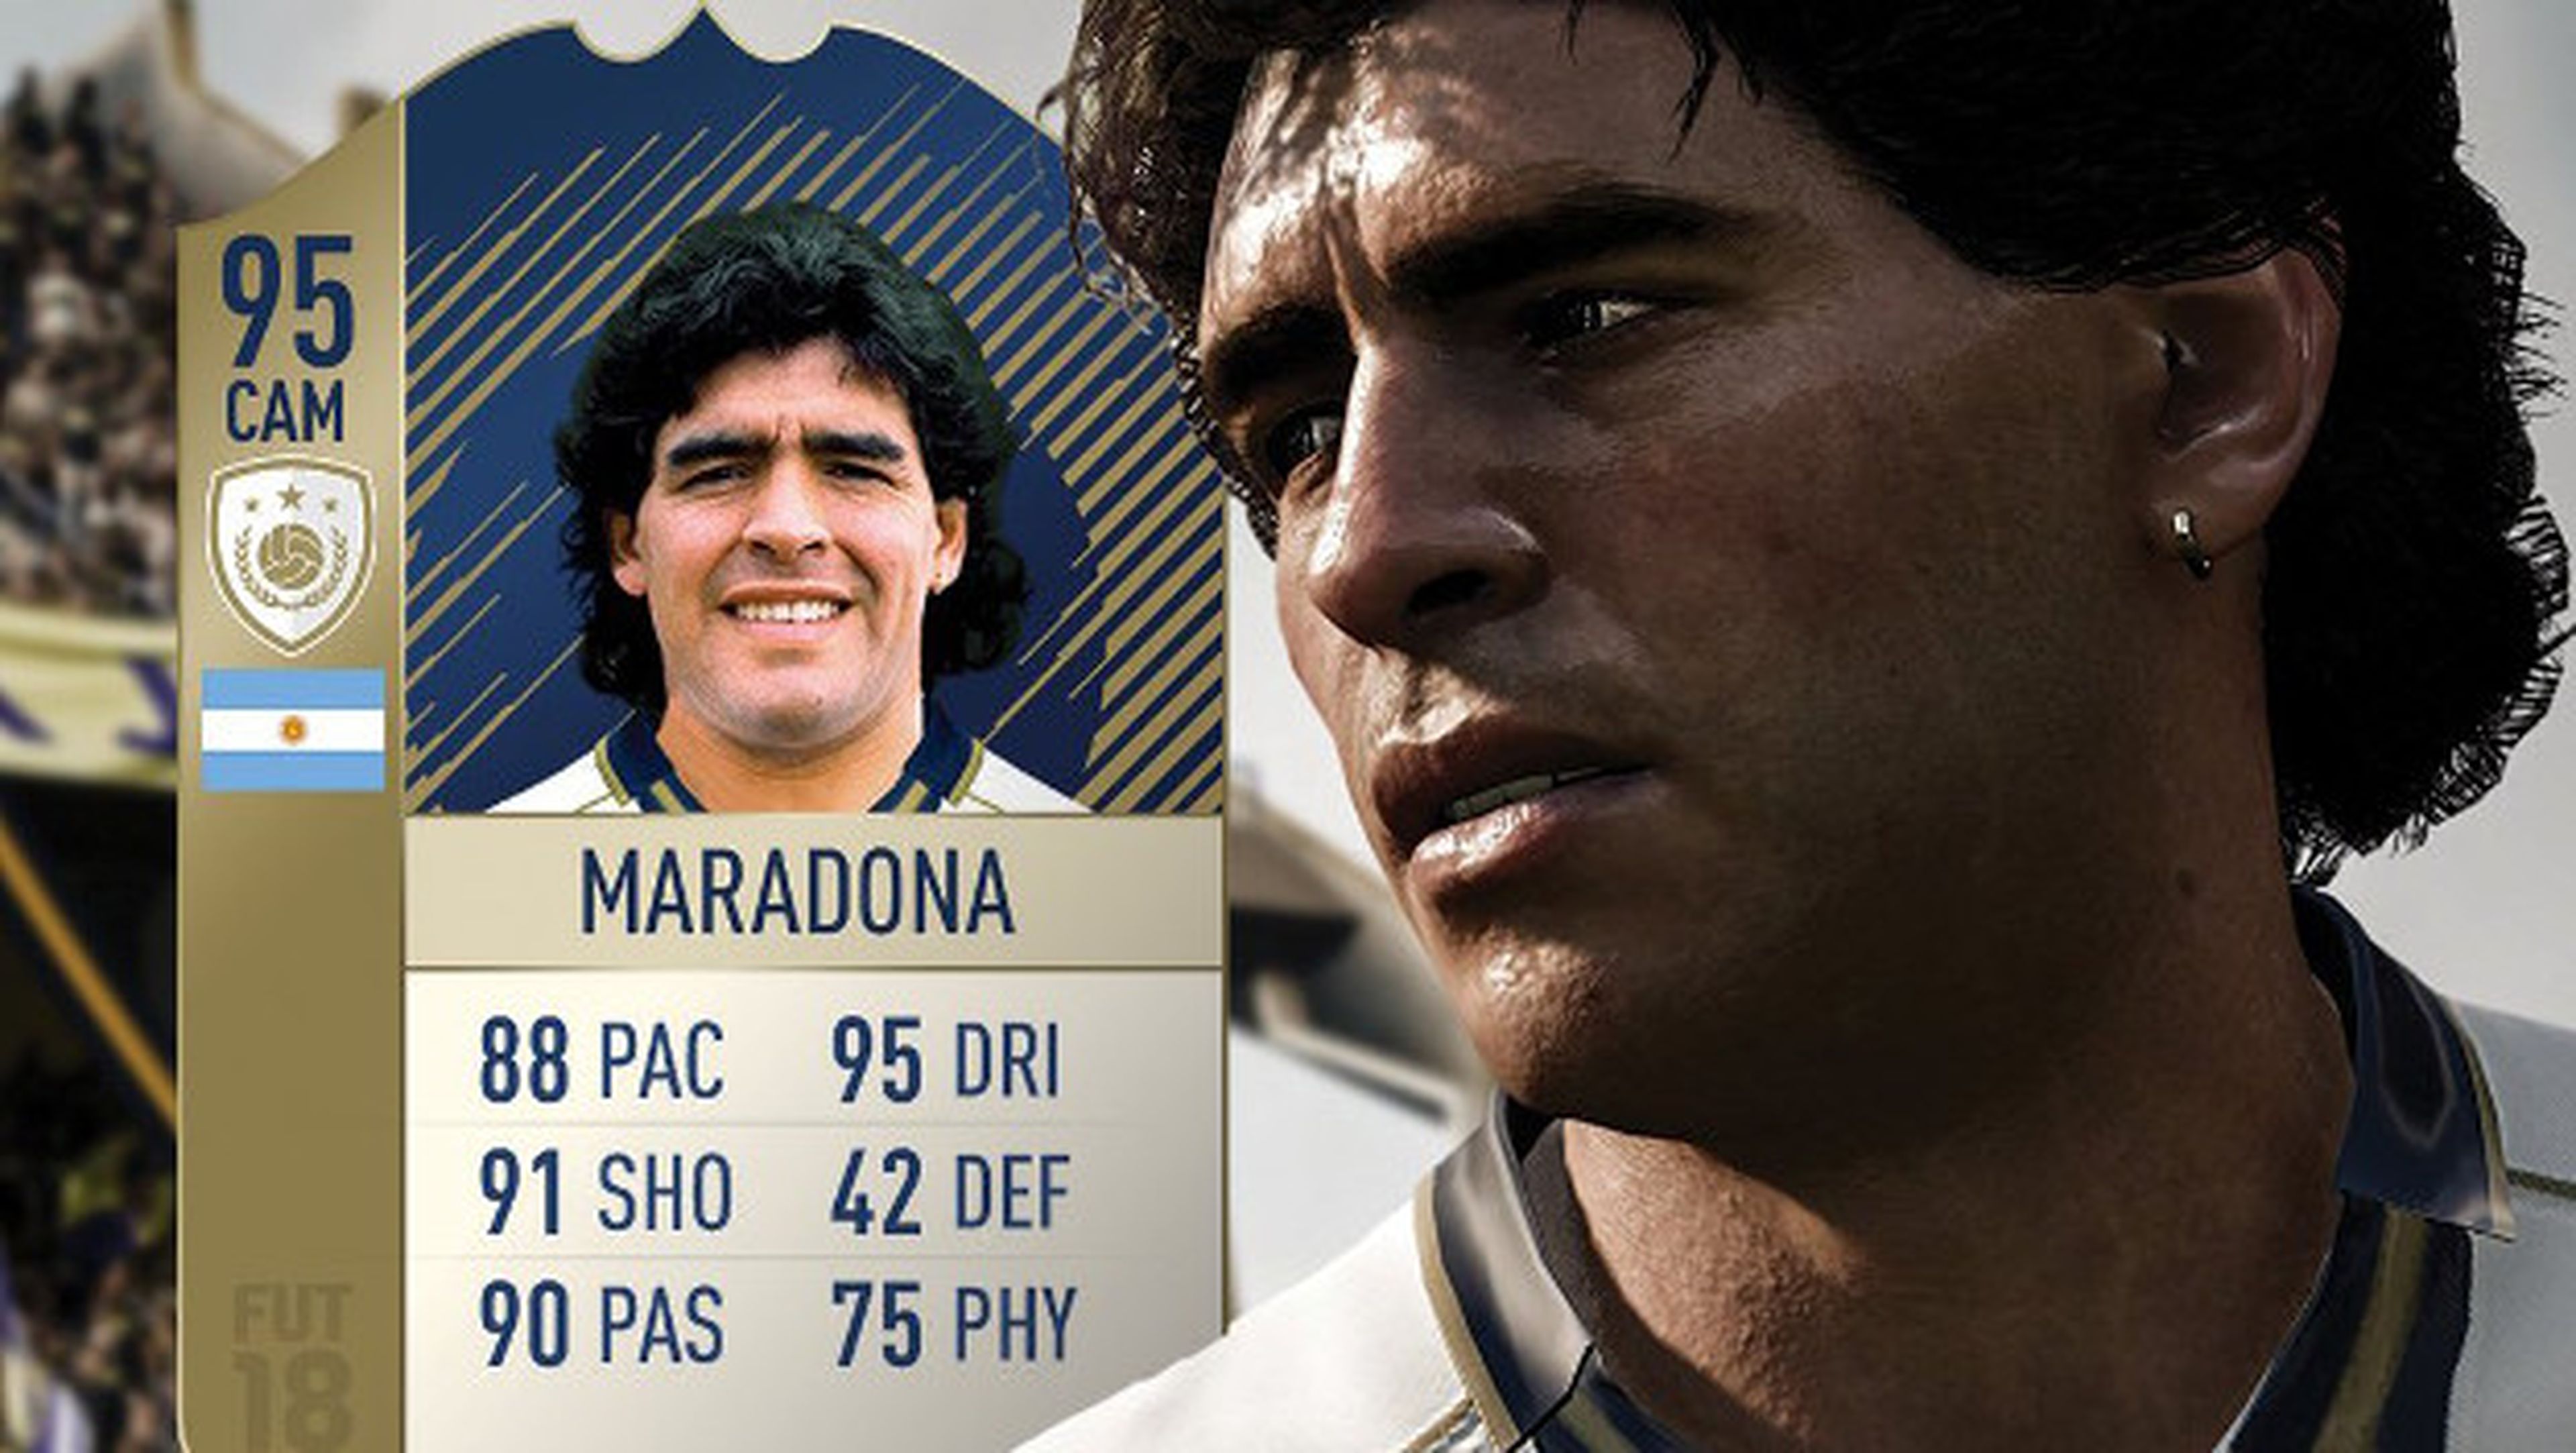 Podrás jugar con Maradona y otras leyendas en FIFA 18.